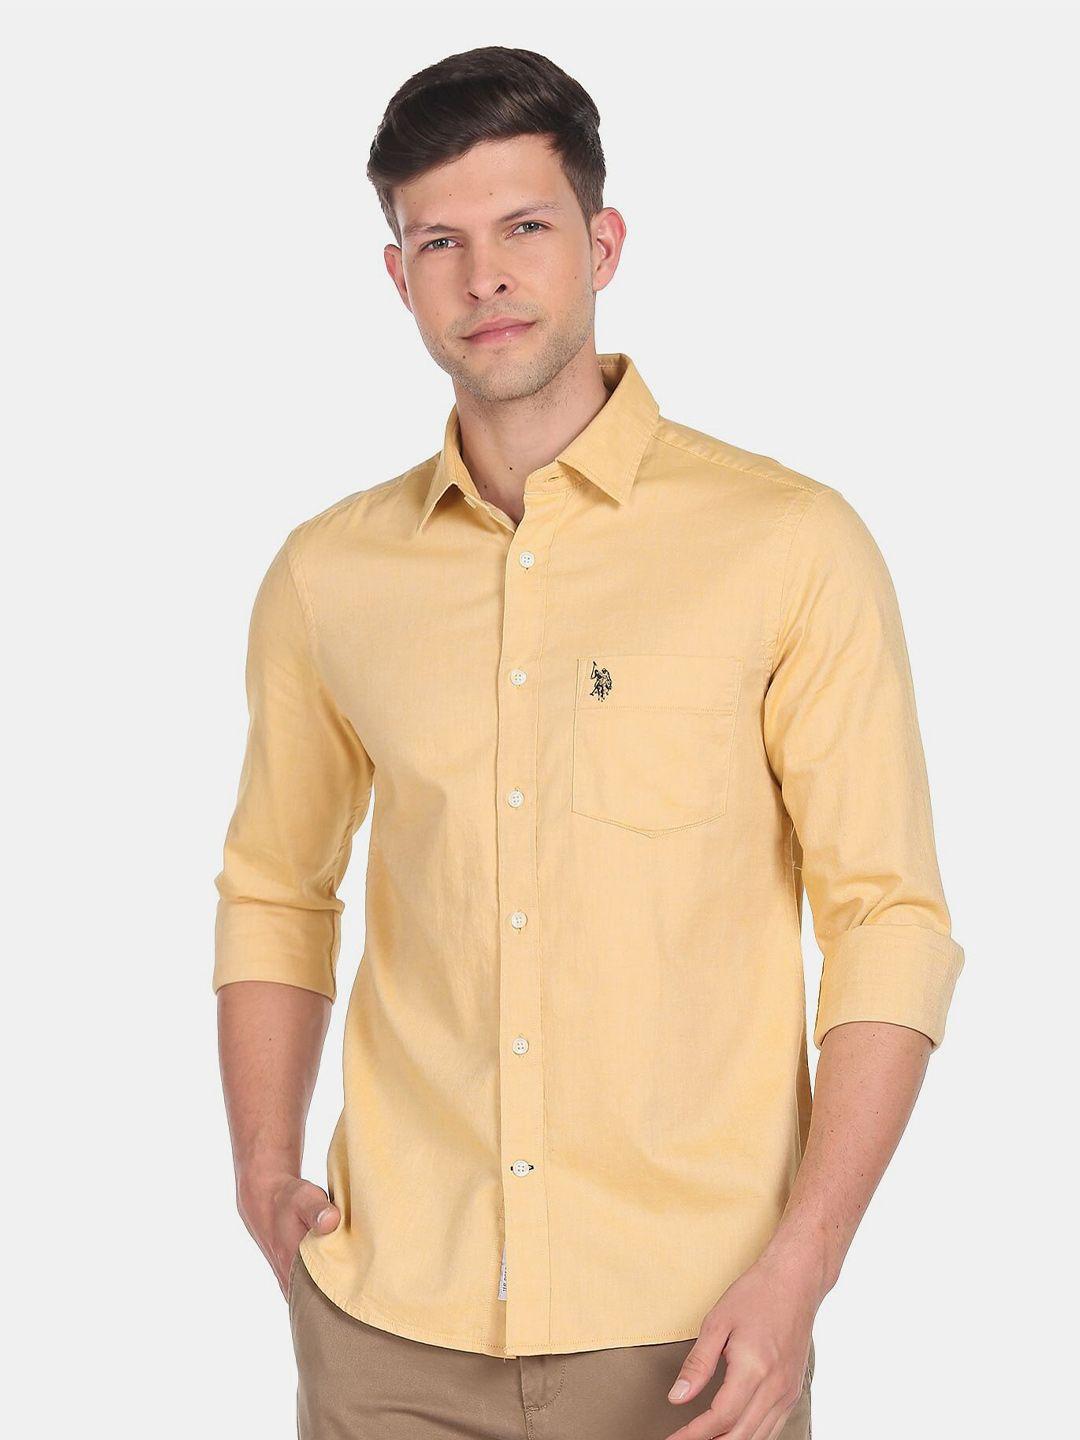 u.s. polo assn. men casual cotton shirt